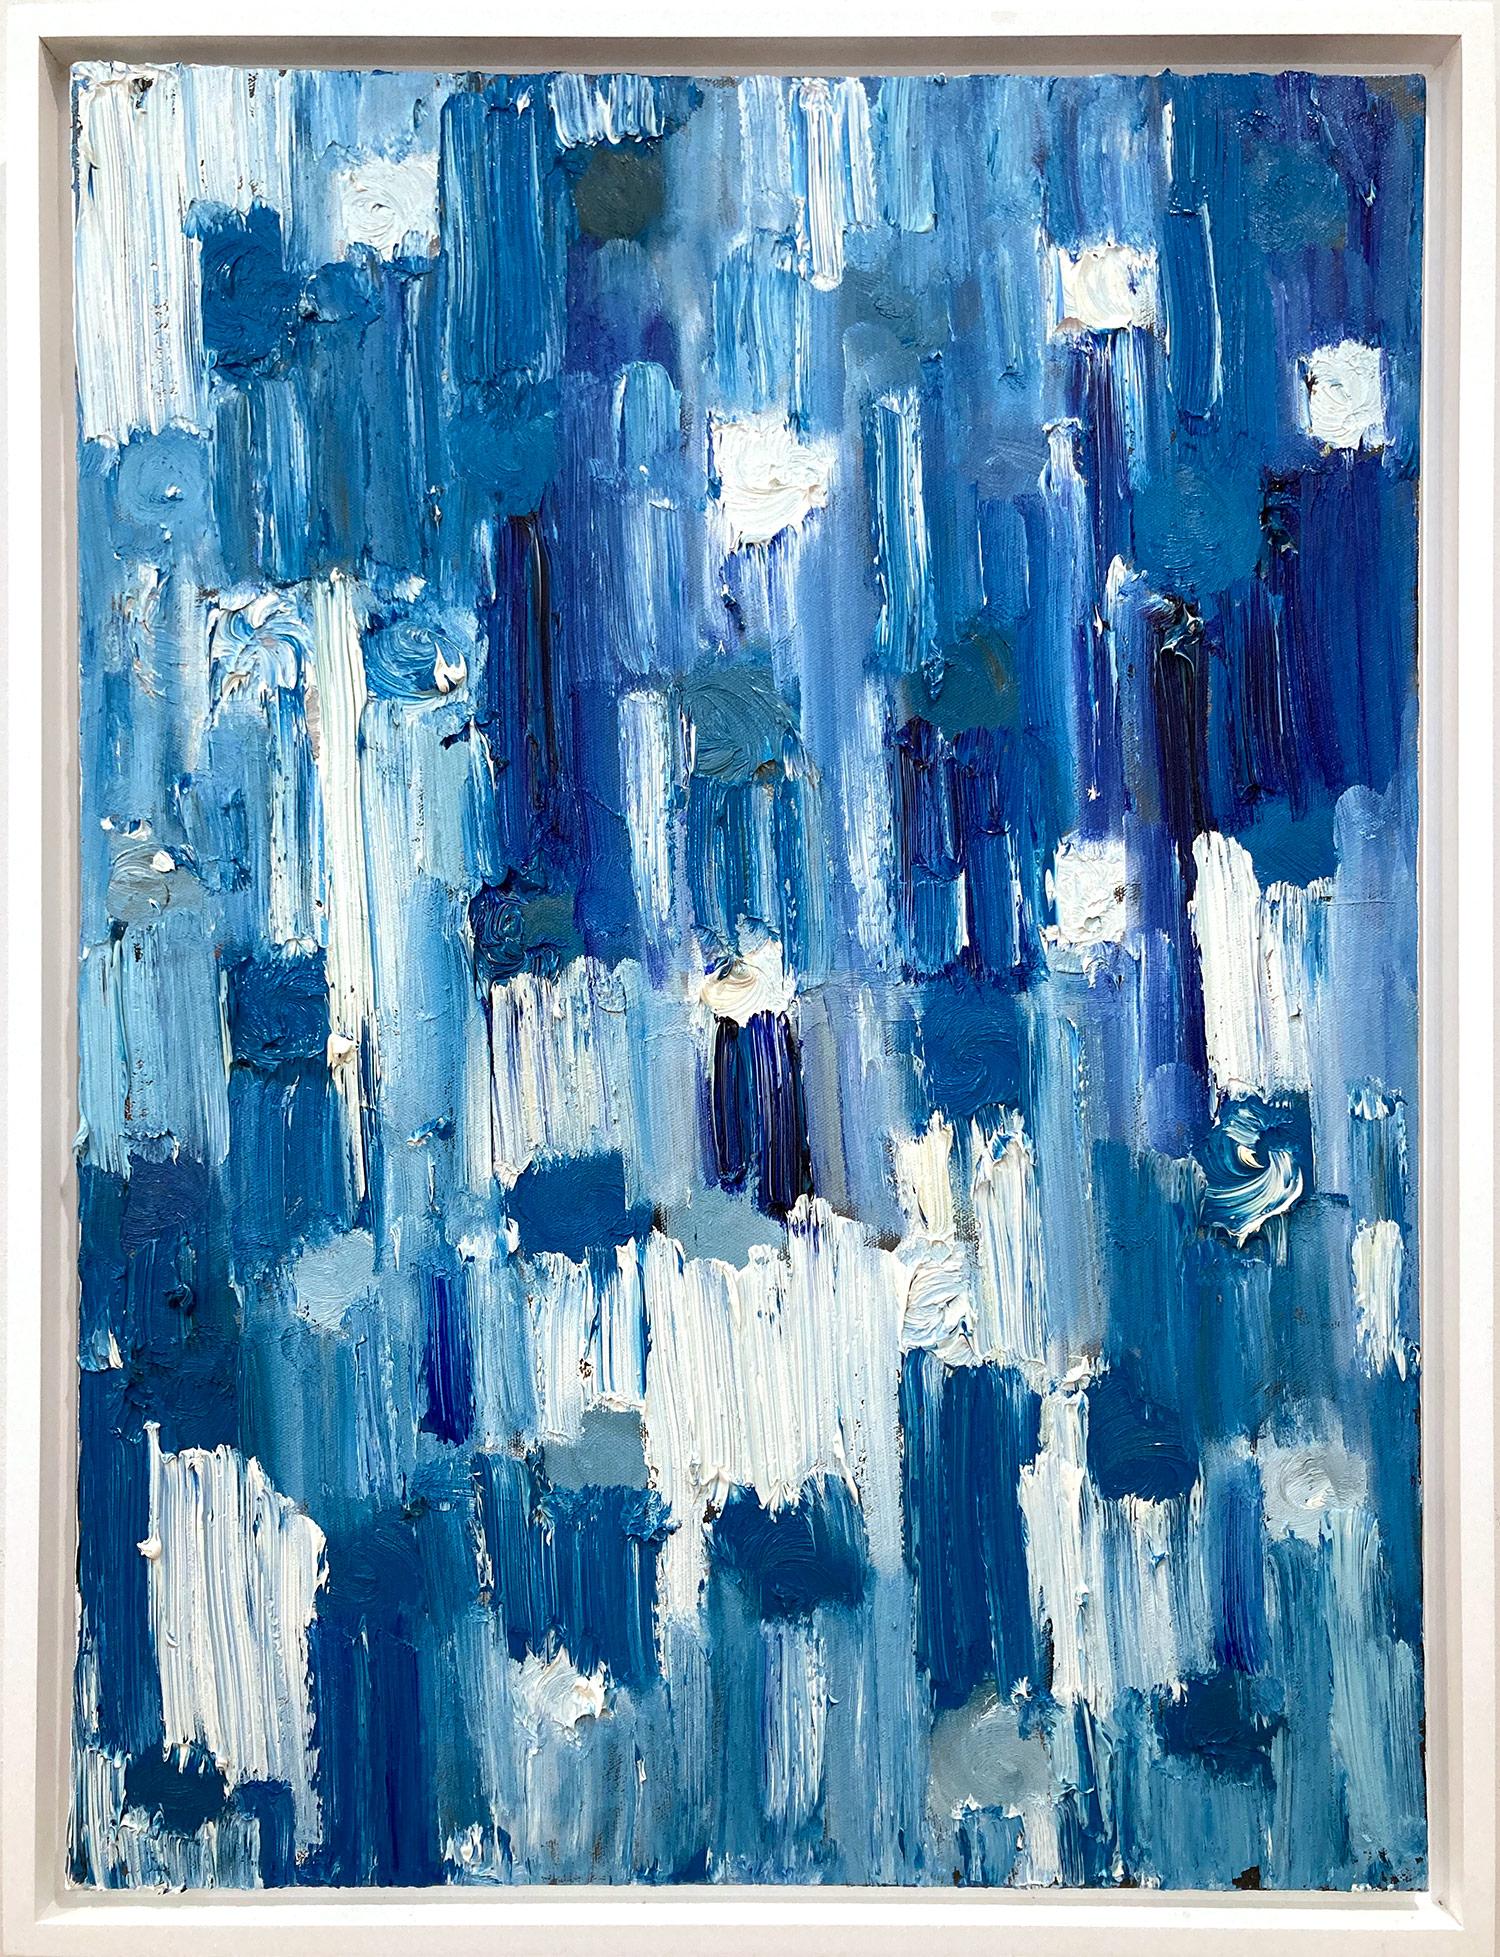 Abstract Painting Cindy Shaoul - "Dripping Dots - Maldives" Peinture à l'huile abstraite colorée bleue sur toile